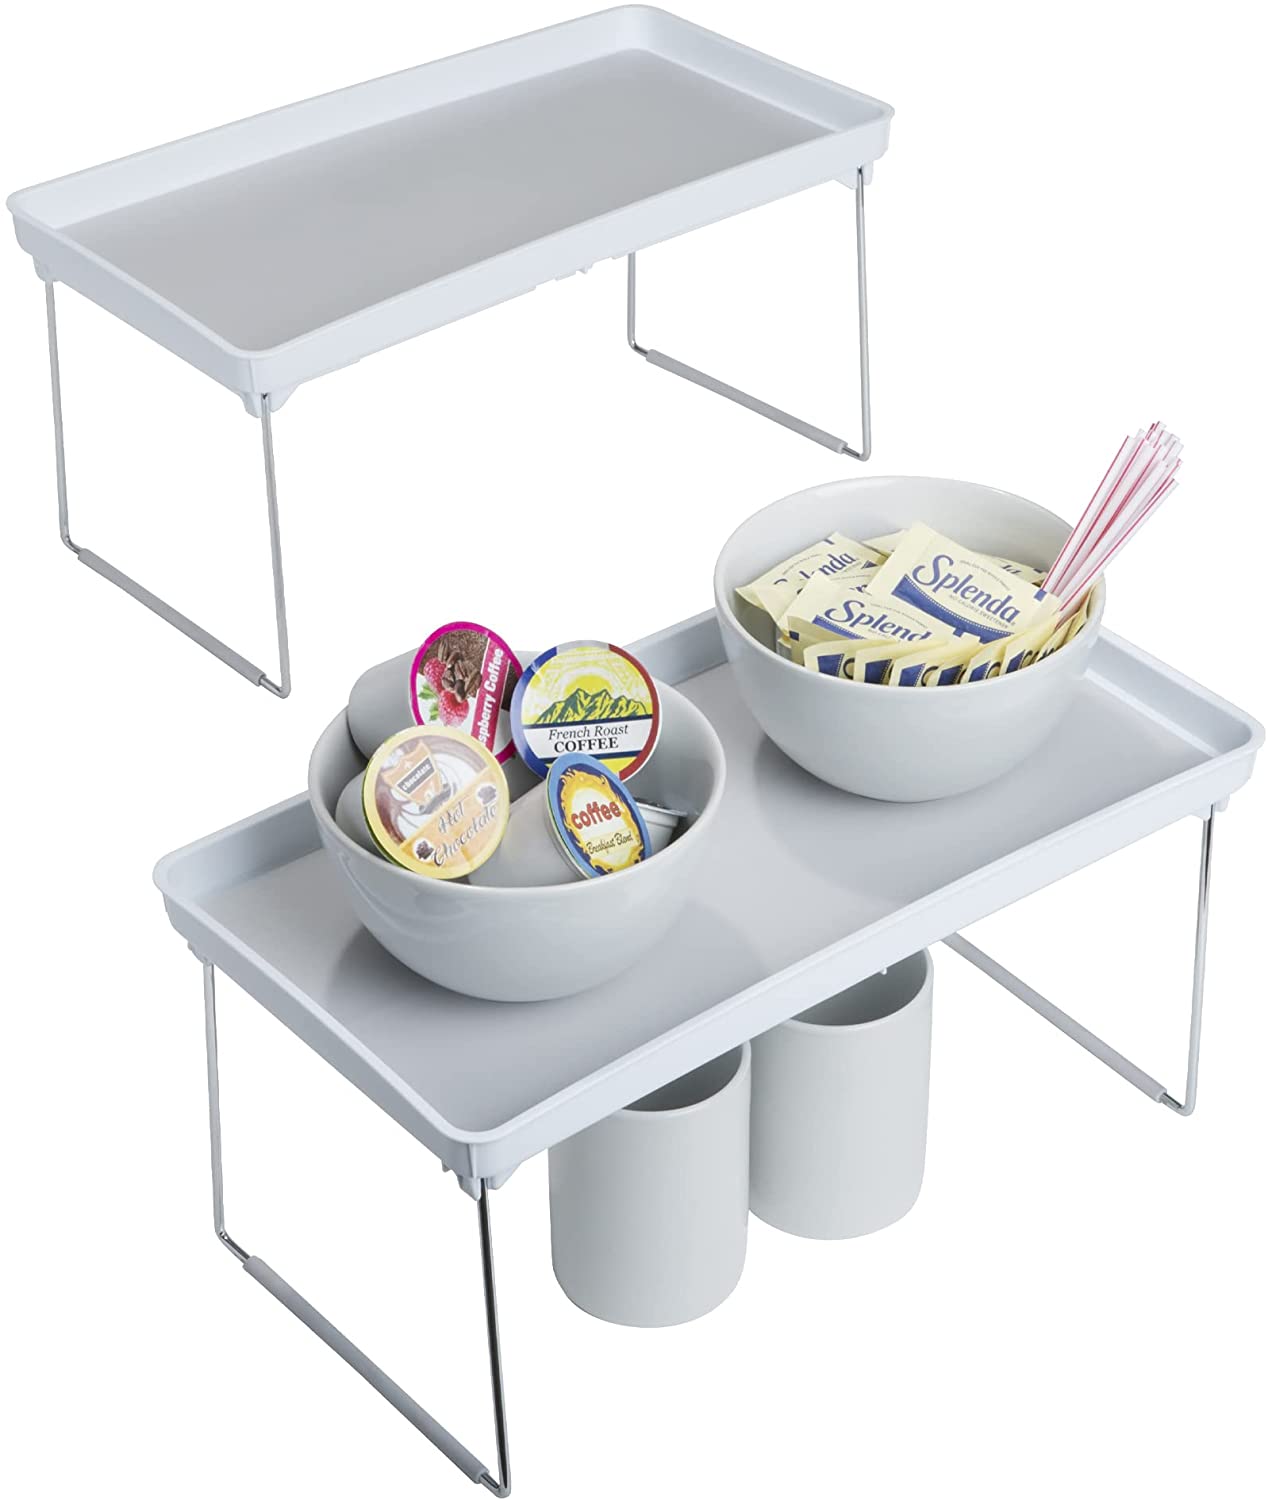 http://www.shopsmartdesign.com/cdn/shop/products/stackable-cabinet-shelf-smart-design-kitchen-8001821as2-incrementing-number-163135.jpg?v=1679335965